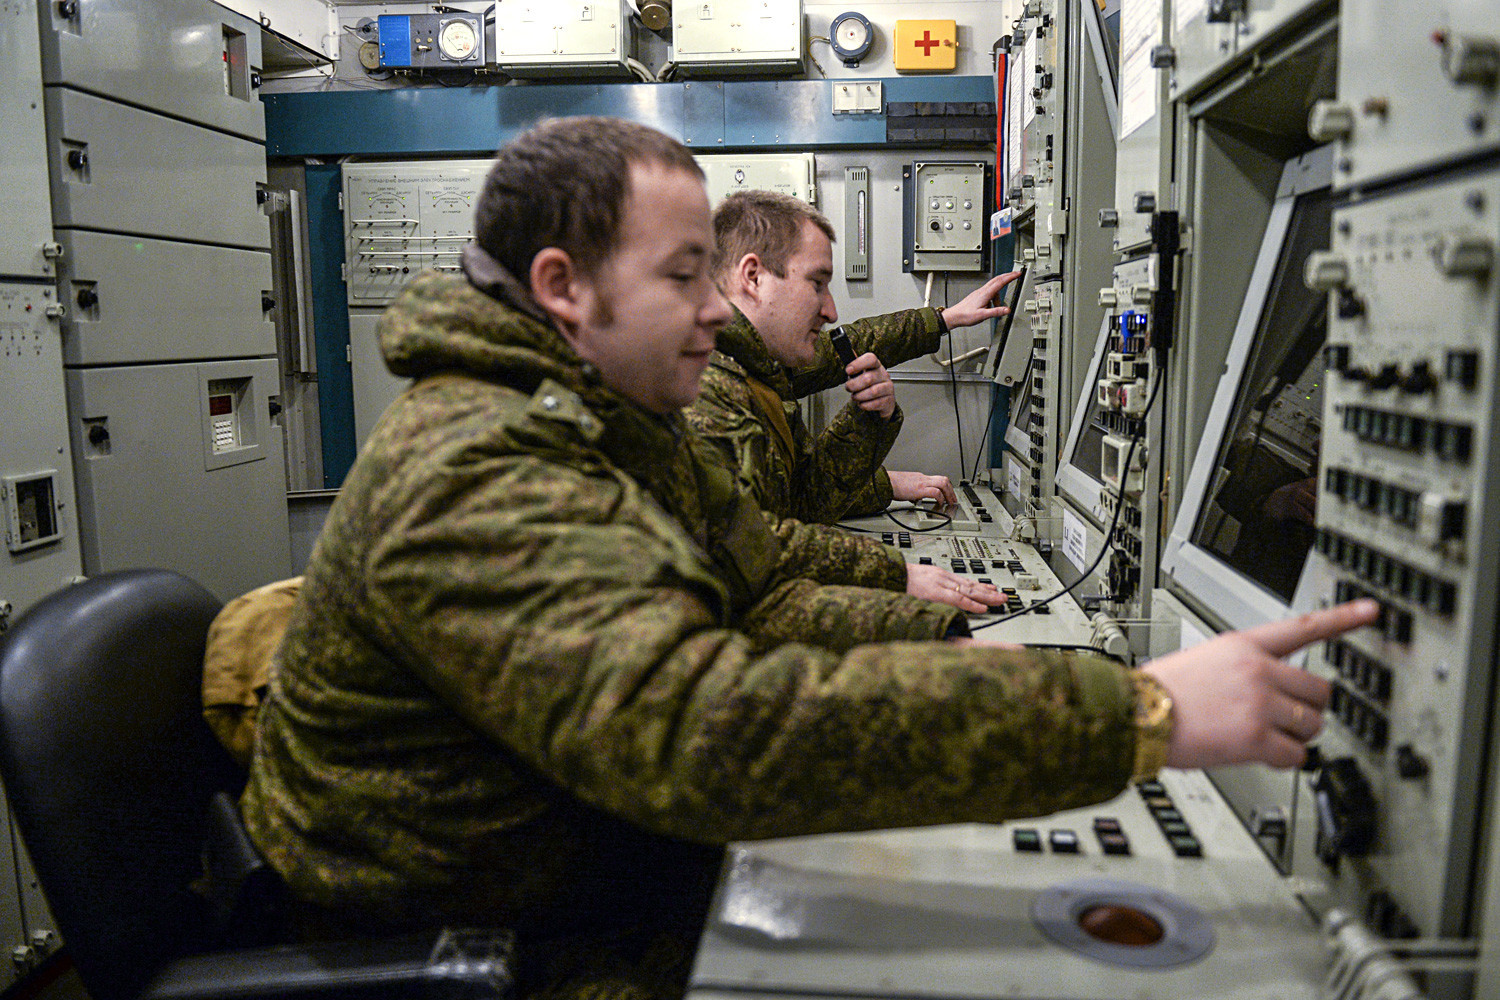 Pripadnici vojne jedinice 03216 Zelenogorske pukovnije PZO-PRO za vrijeme obuke u rukovanju raketnim sustavom S-400.

